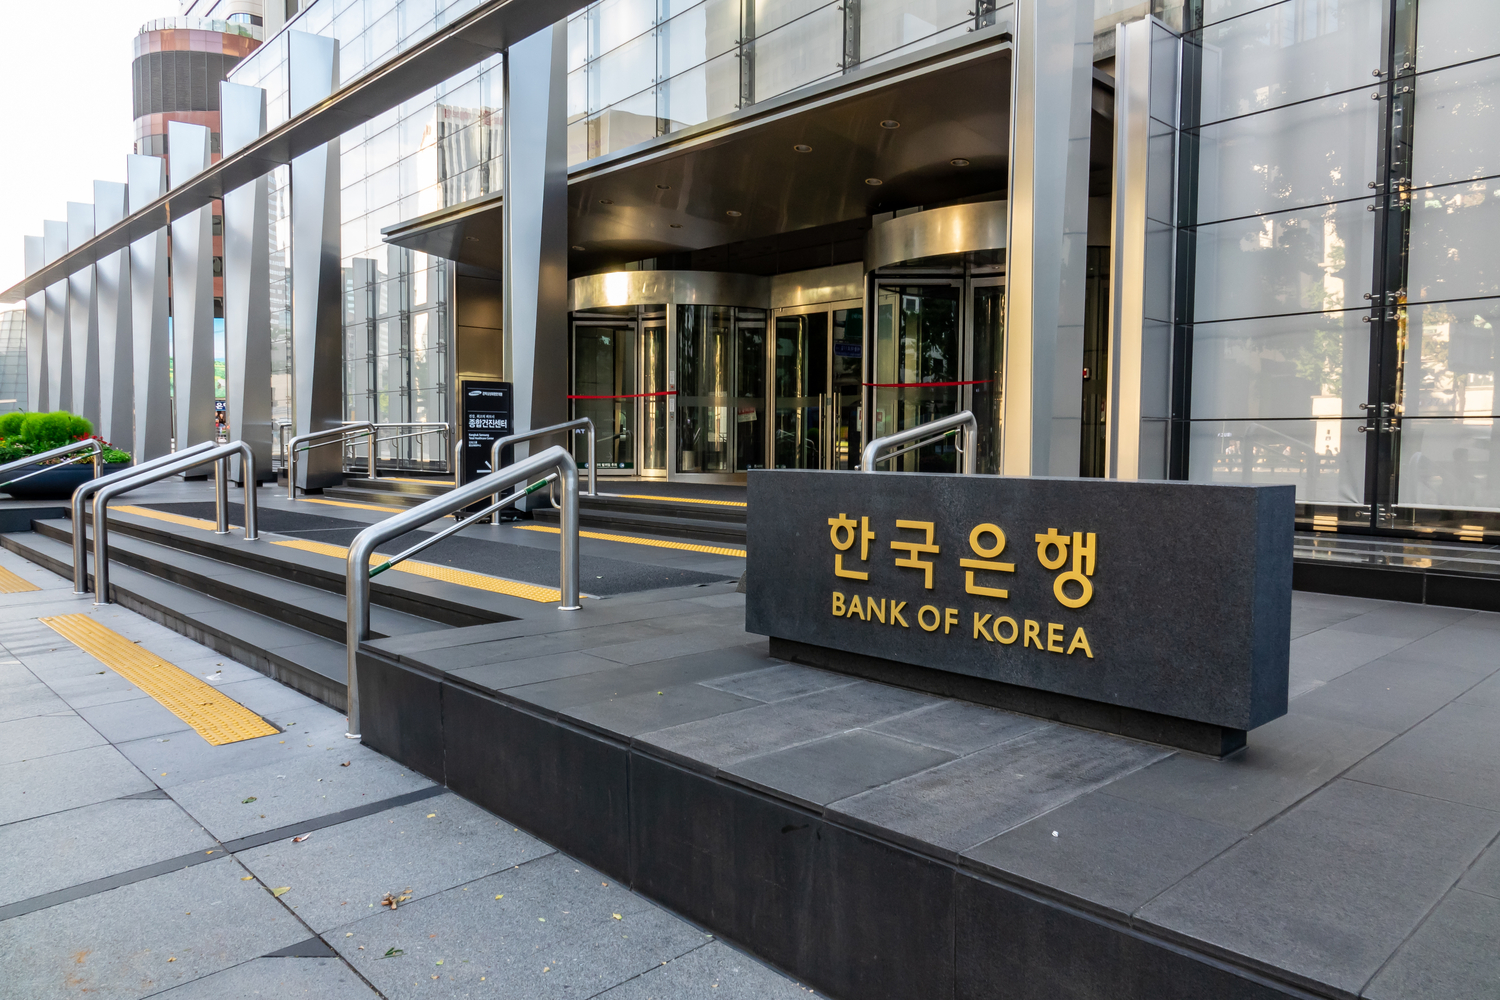 Η Τράπεζα της Κορέας (BoK) κλιμακώνει δοκιμαστικά προγράμματα CBDC σε παγκόσμια εμβάσματα και NFT